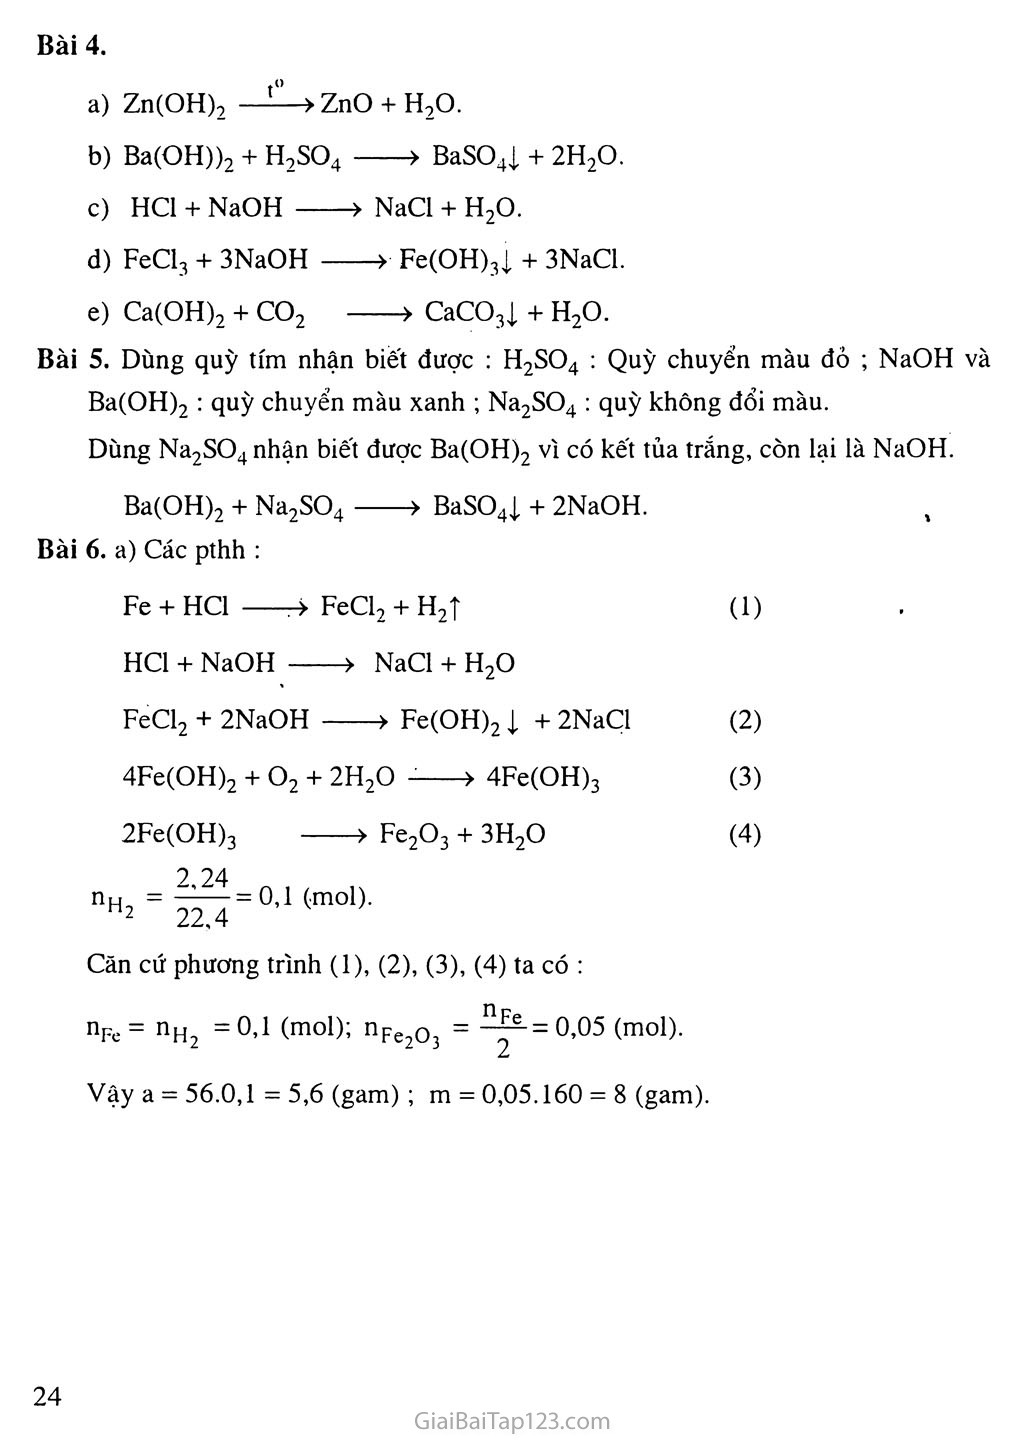 Bài 7: Tính chất hóa học của bazơ trang 4